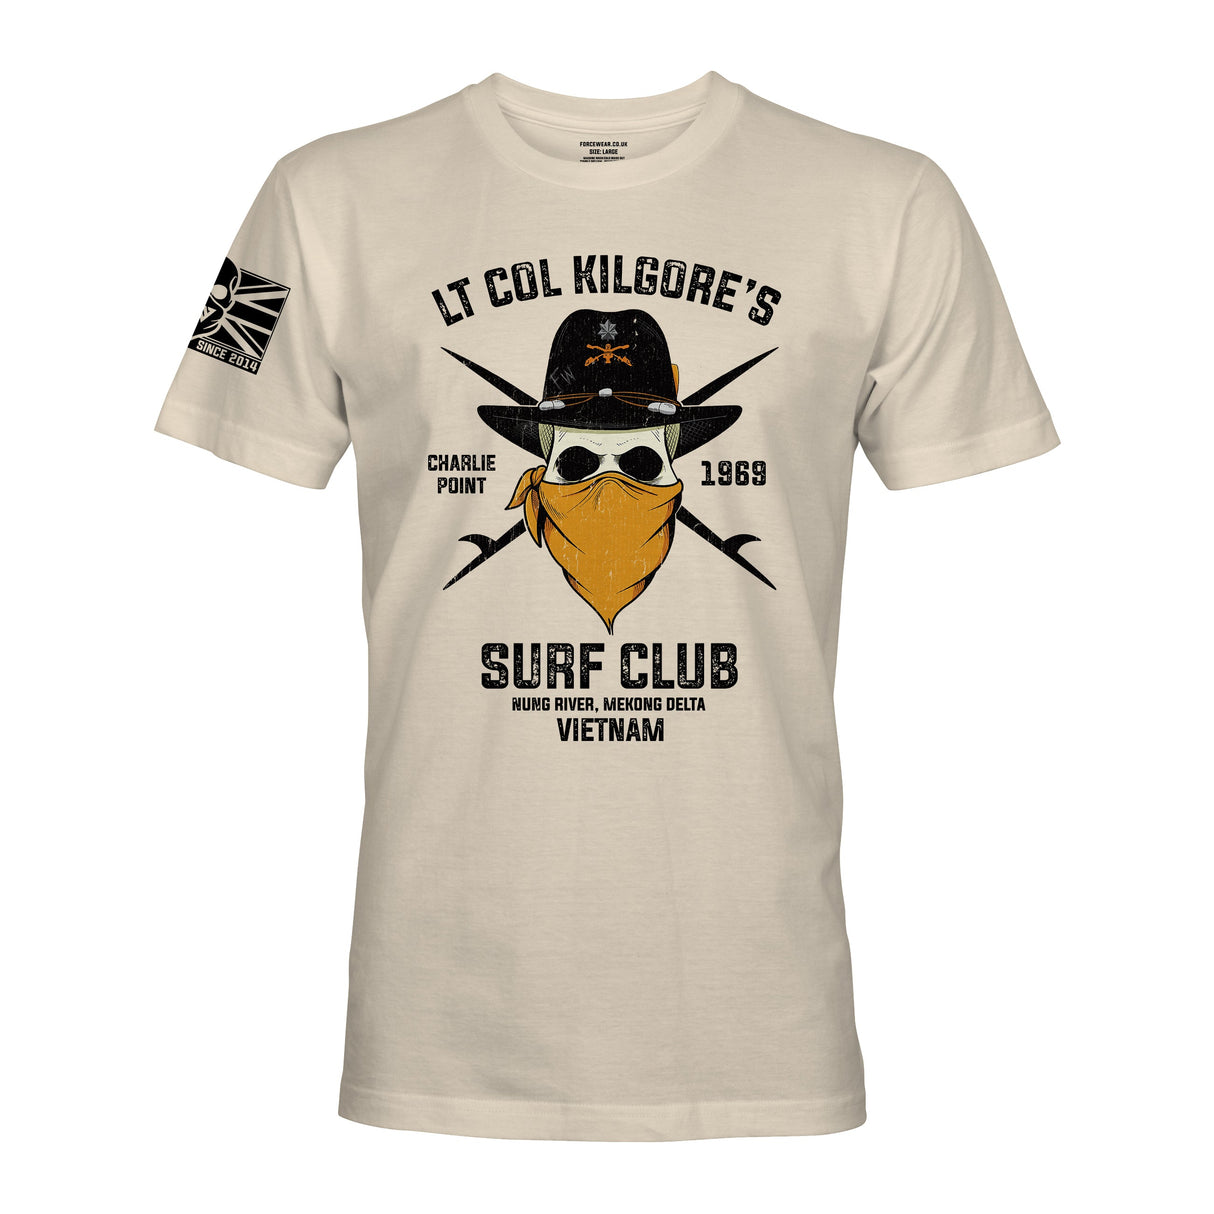 LT COL KILGORE'S SURF CLUB - Force Wear HQ - T-SHIRTS